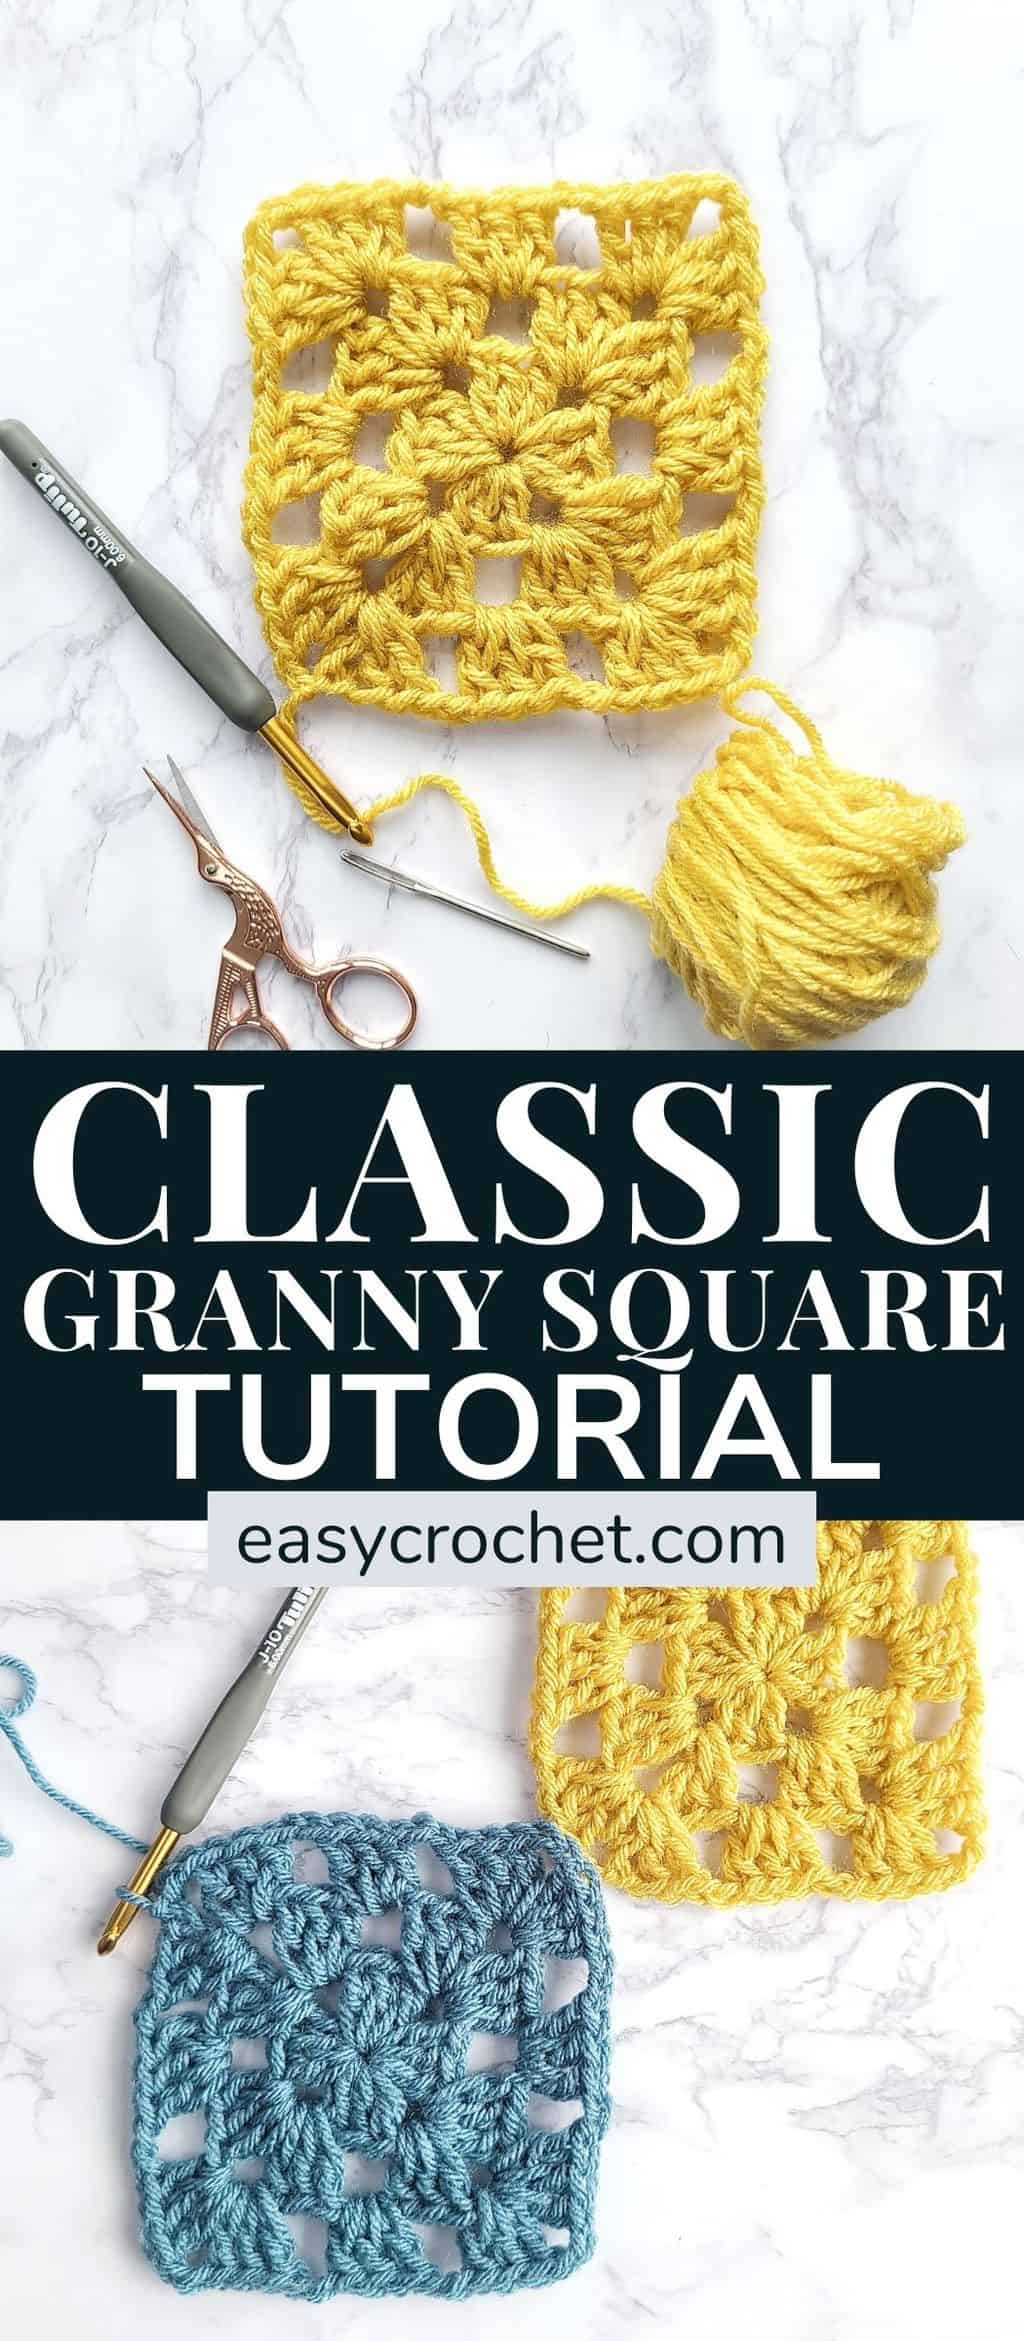 Crochet for beginners granny square